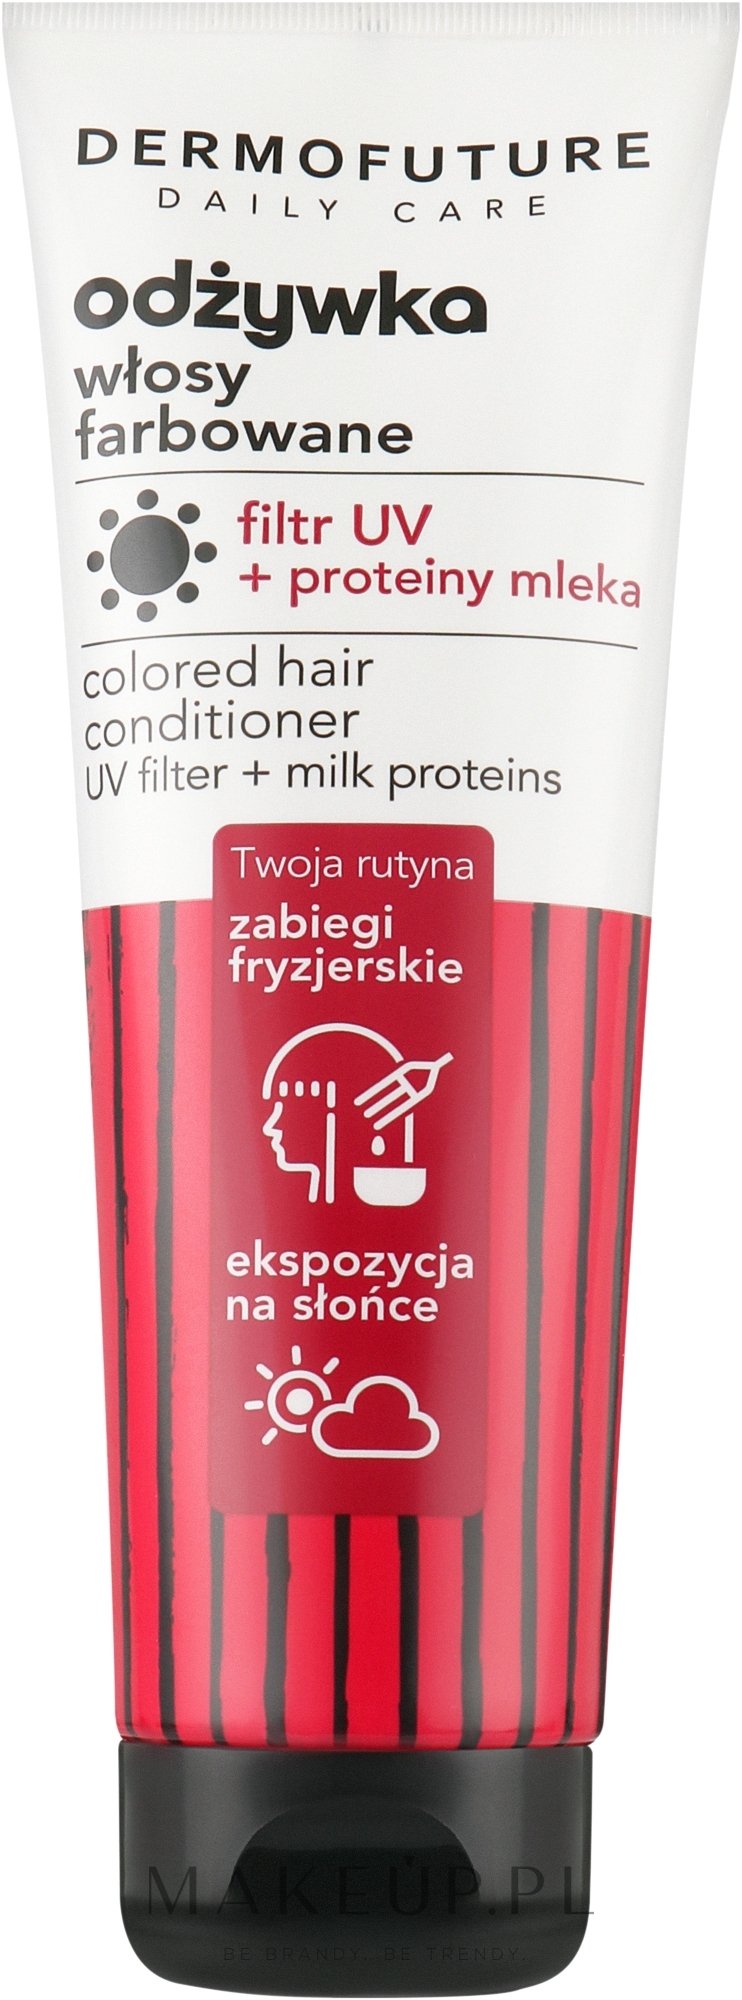 odżywka do włosów farbowanych z filtrami uv spray